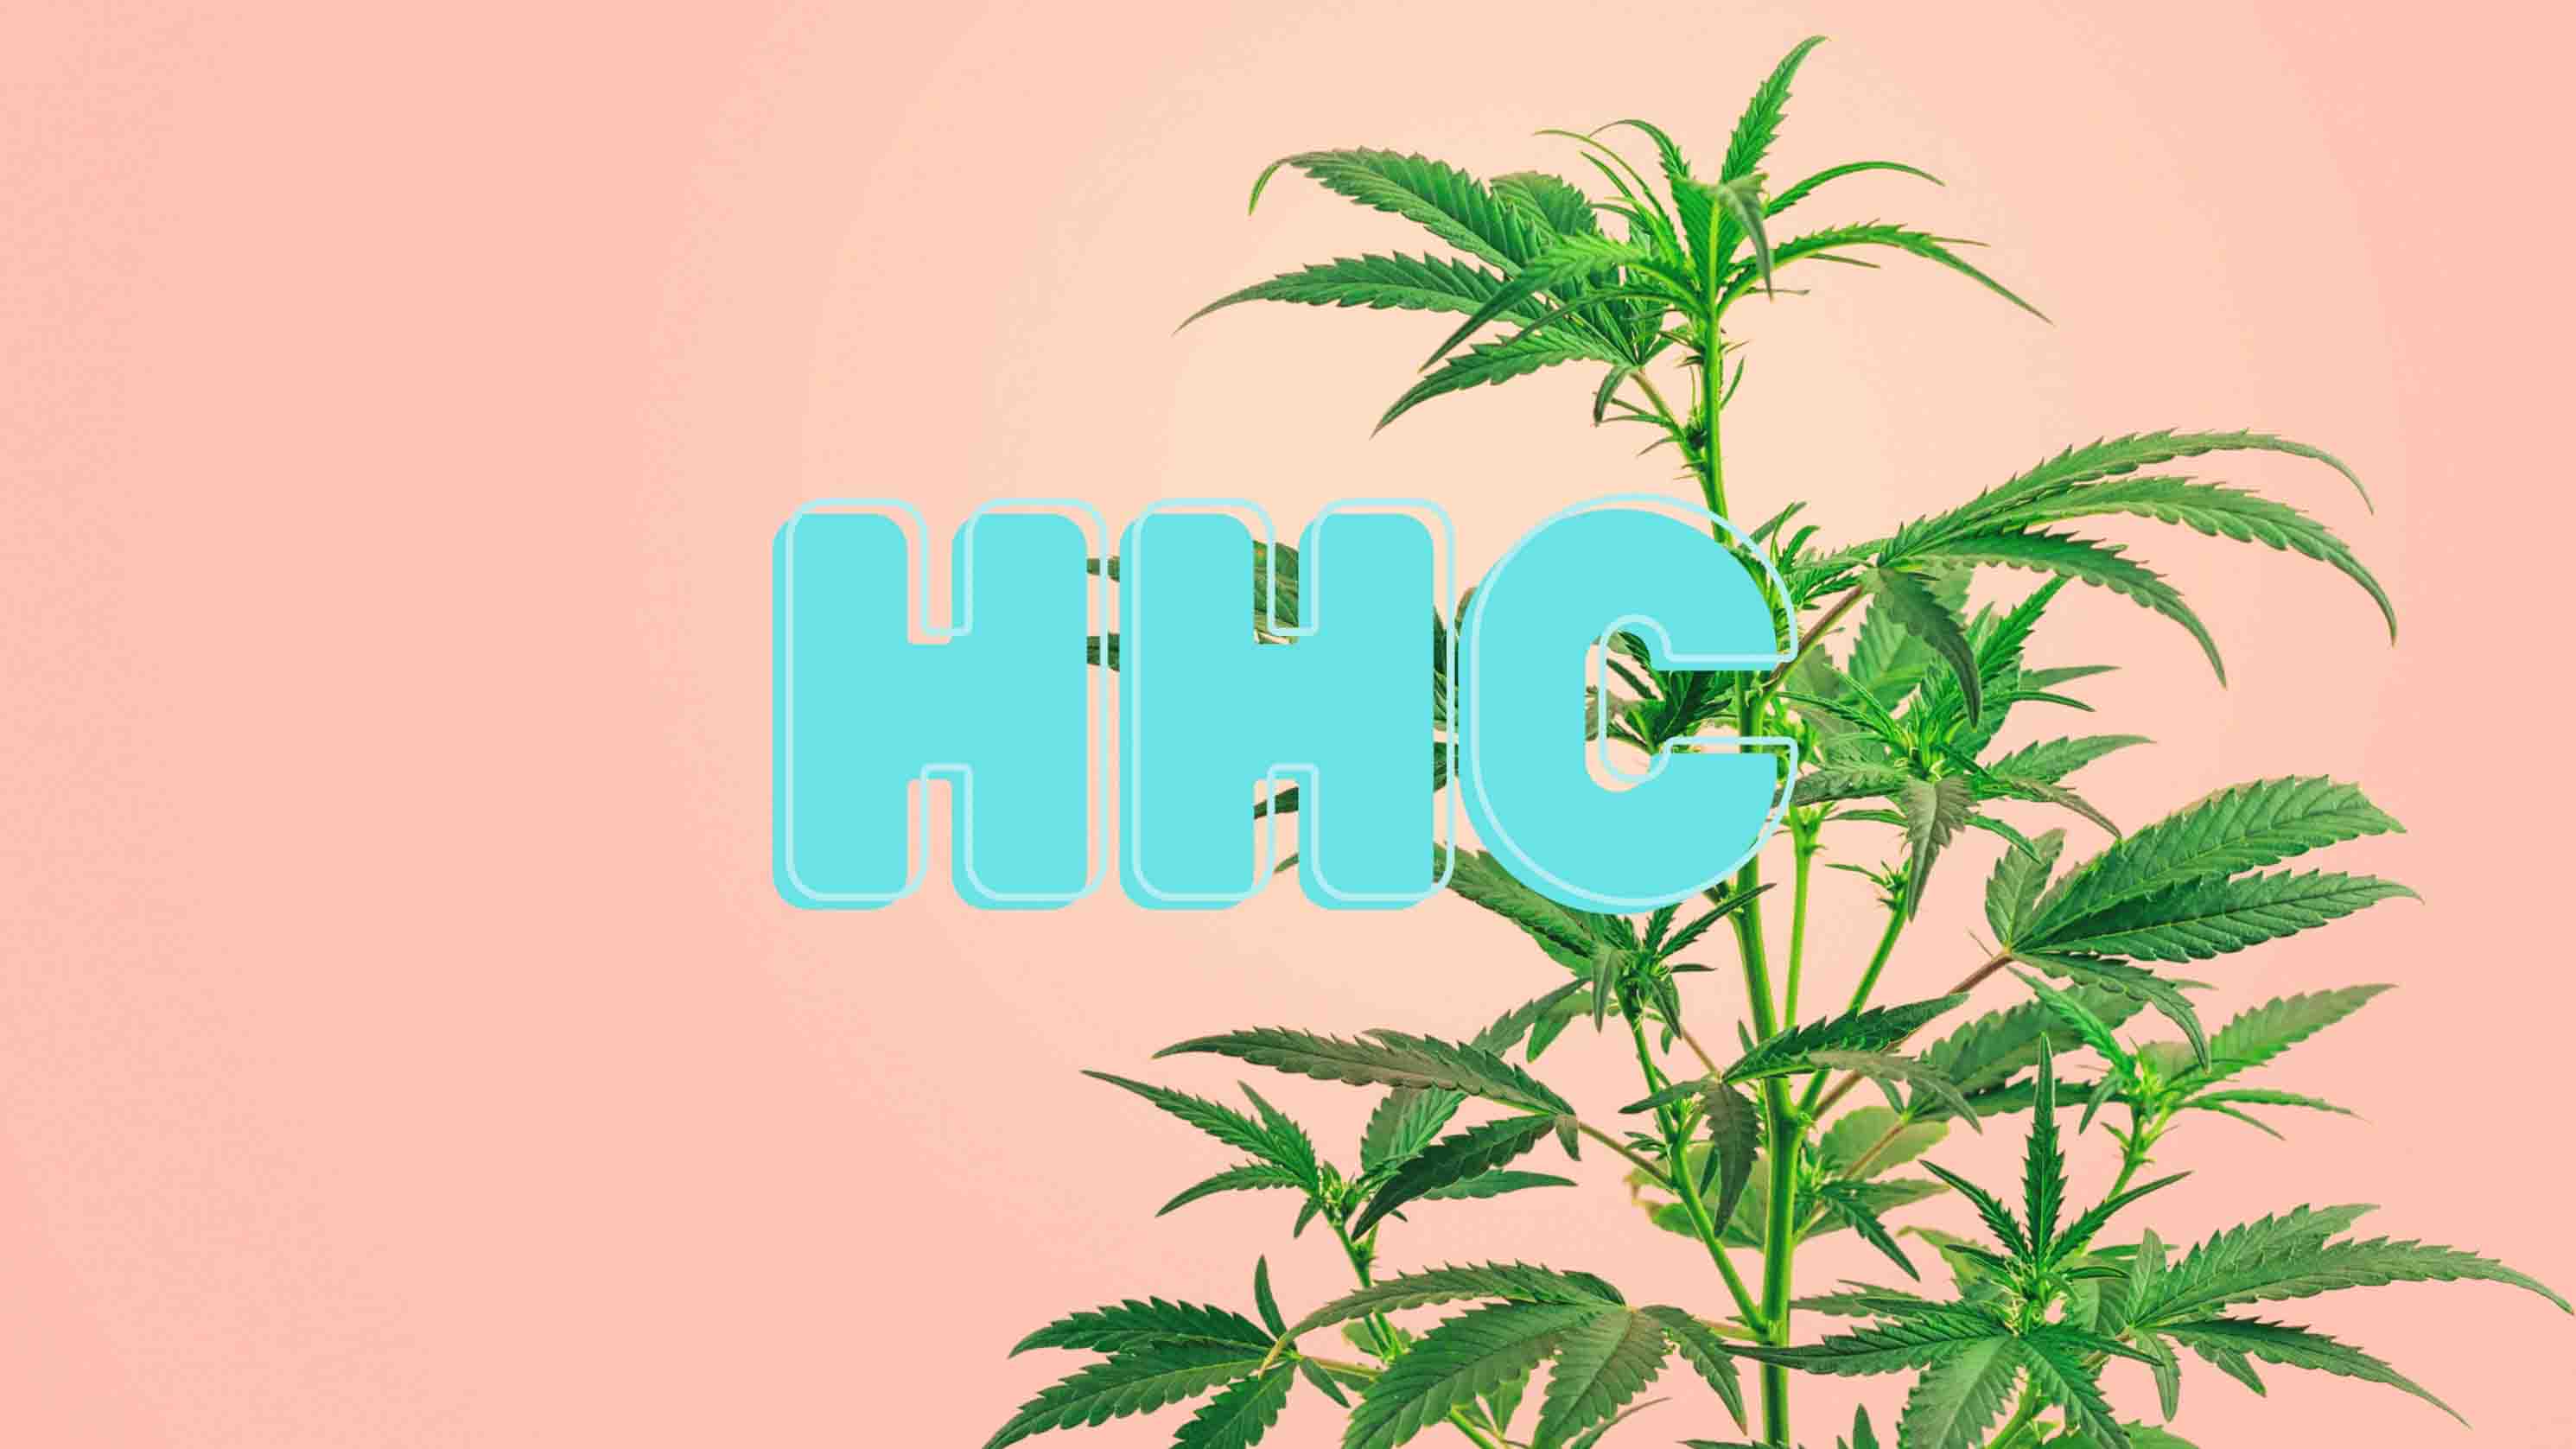 Cannabispflanze mit der Überschrift "HHC"